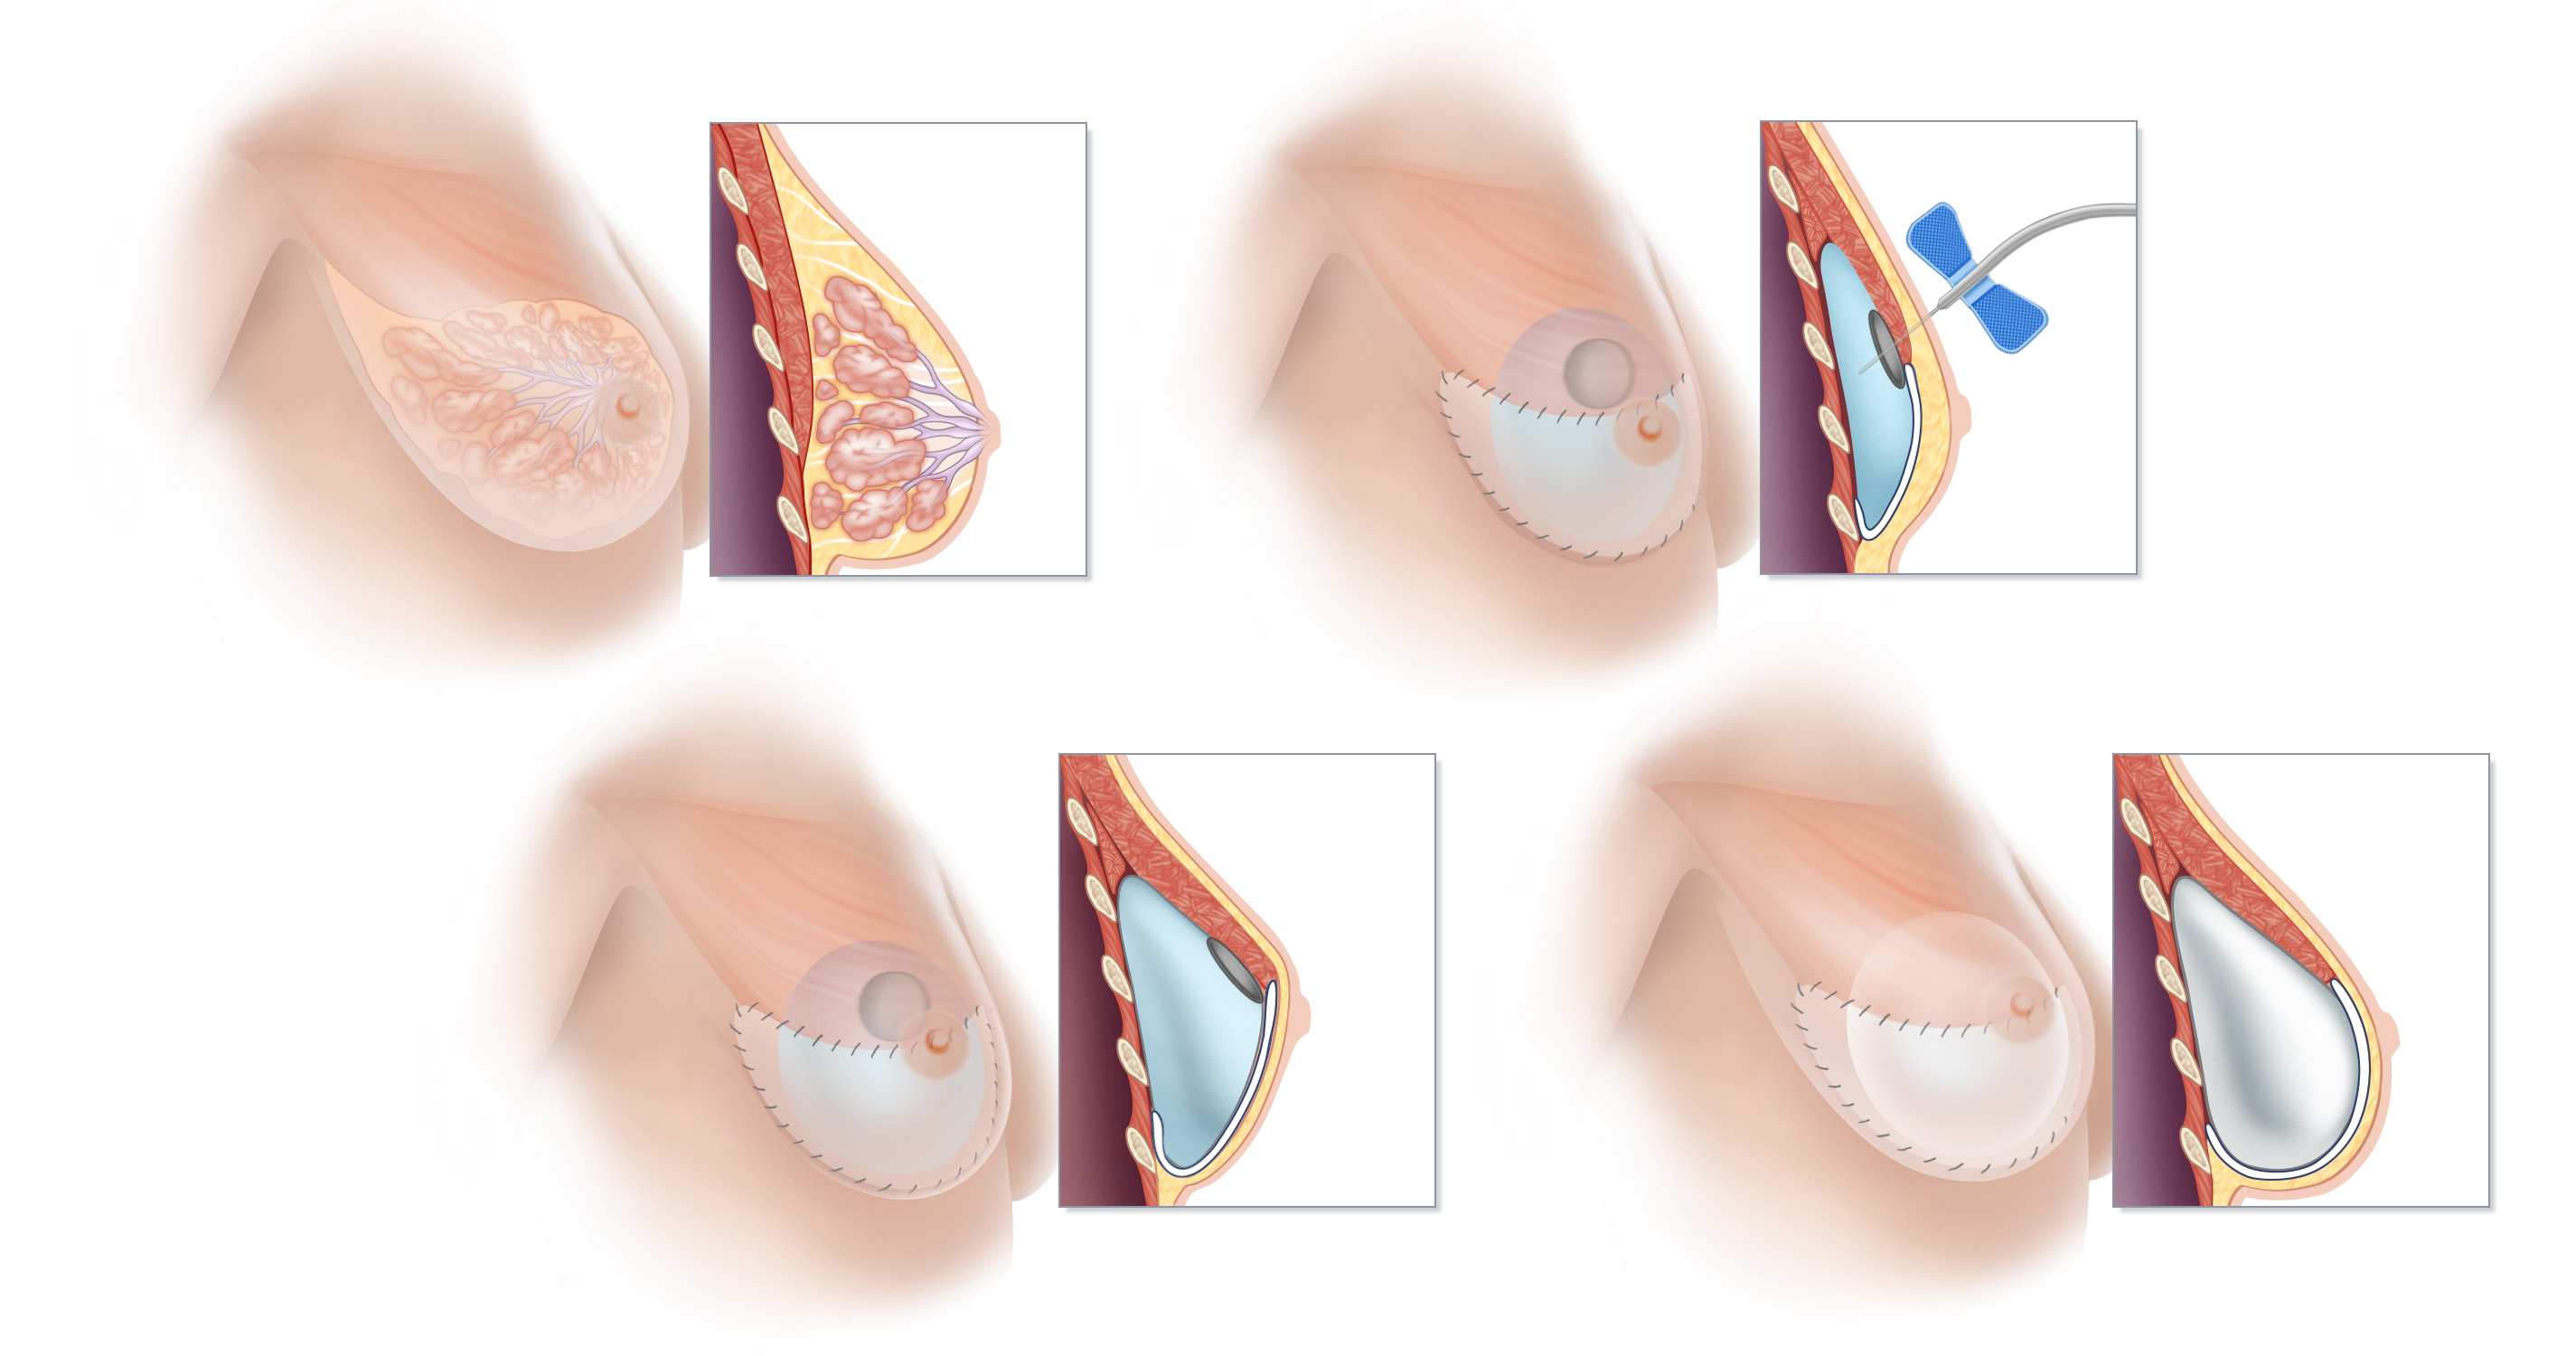 Understanding Pectoralis in Breast Augmentation